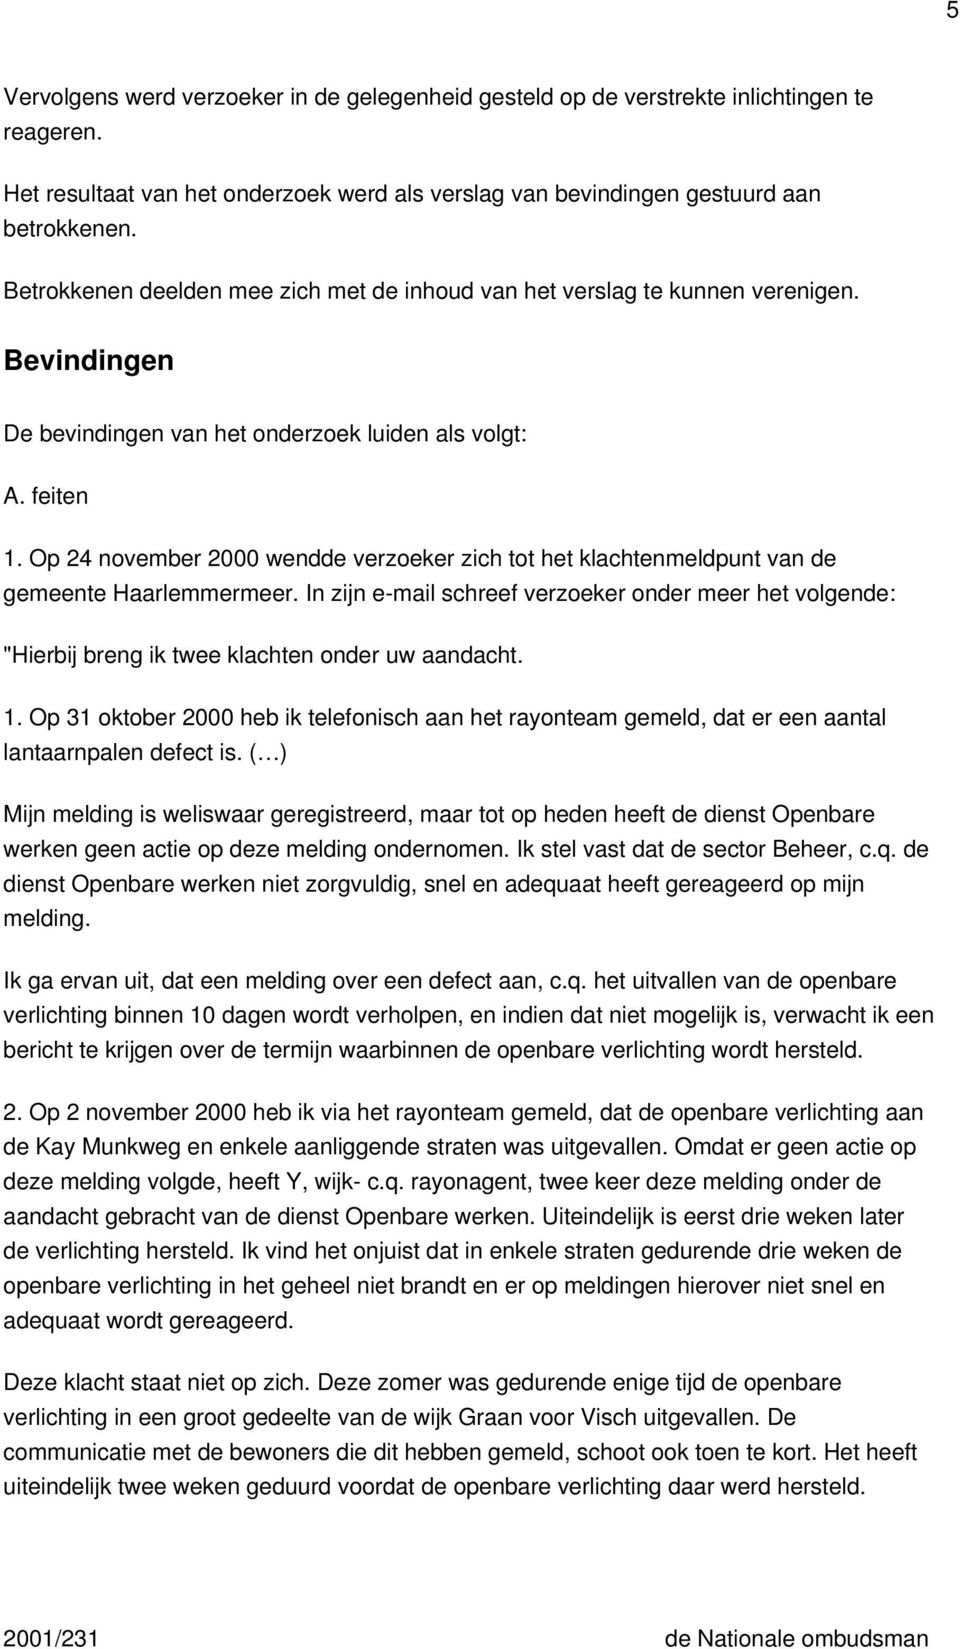 Op 24 november 2000 wendde verzoeker zich tot het klachtenmeldpunt van de gemeente Haarlemmermeer.